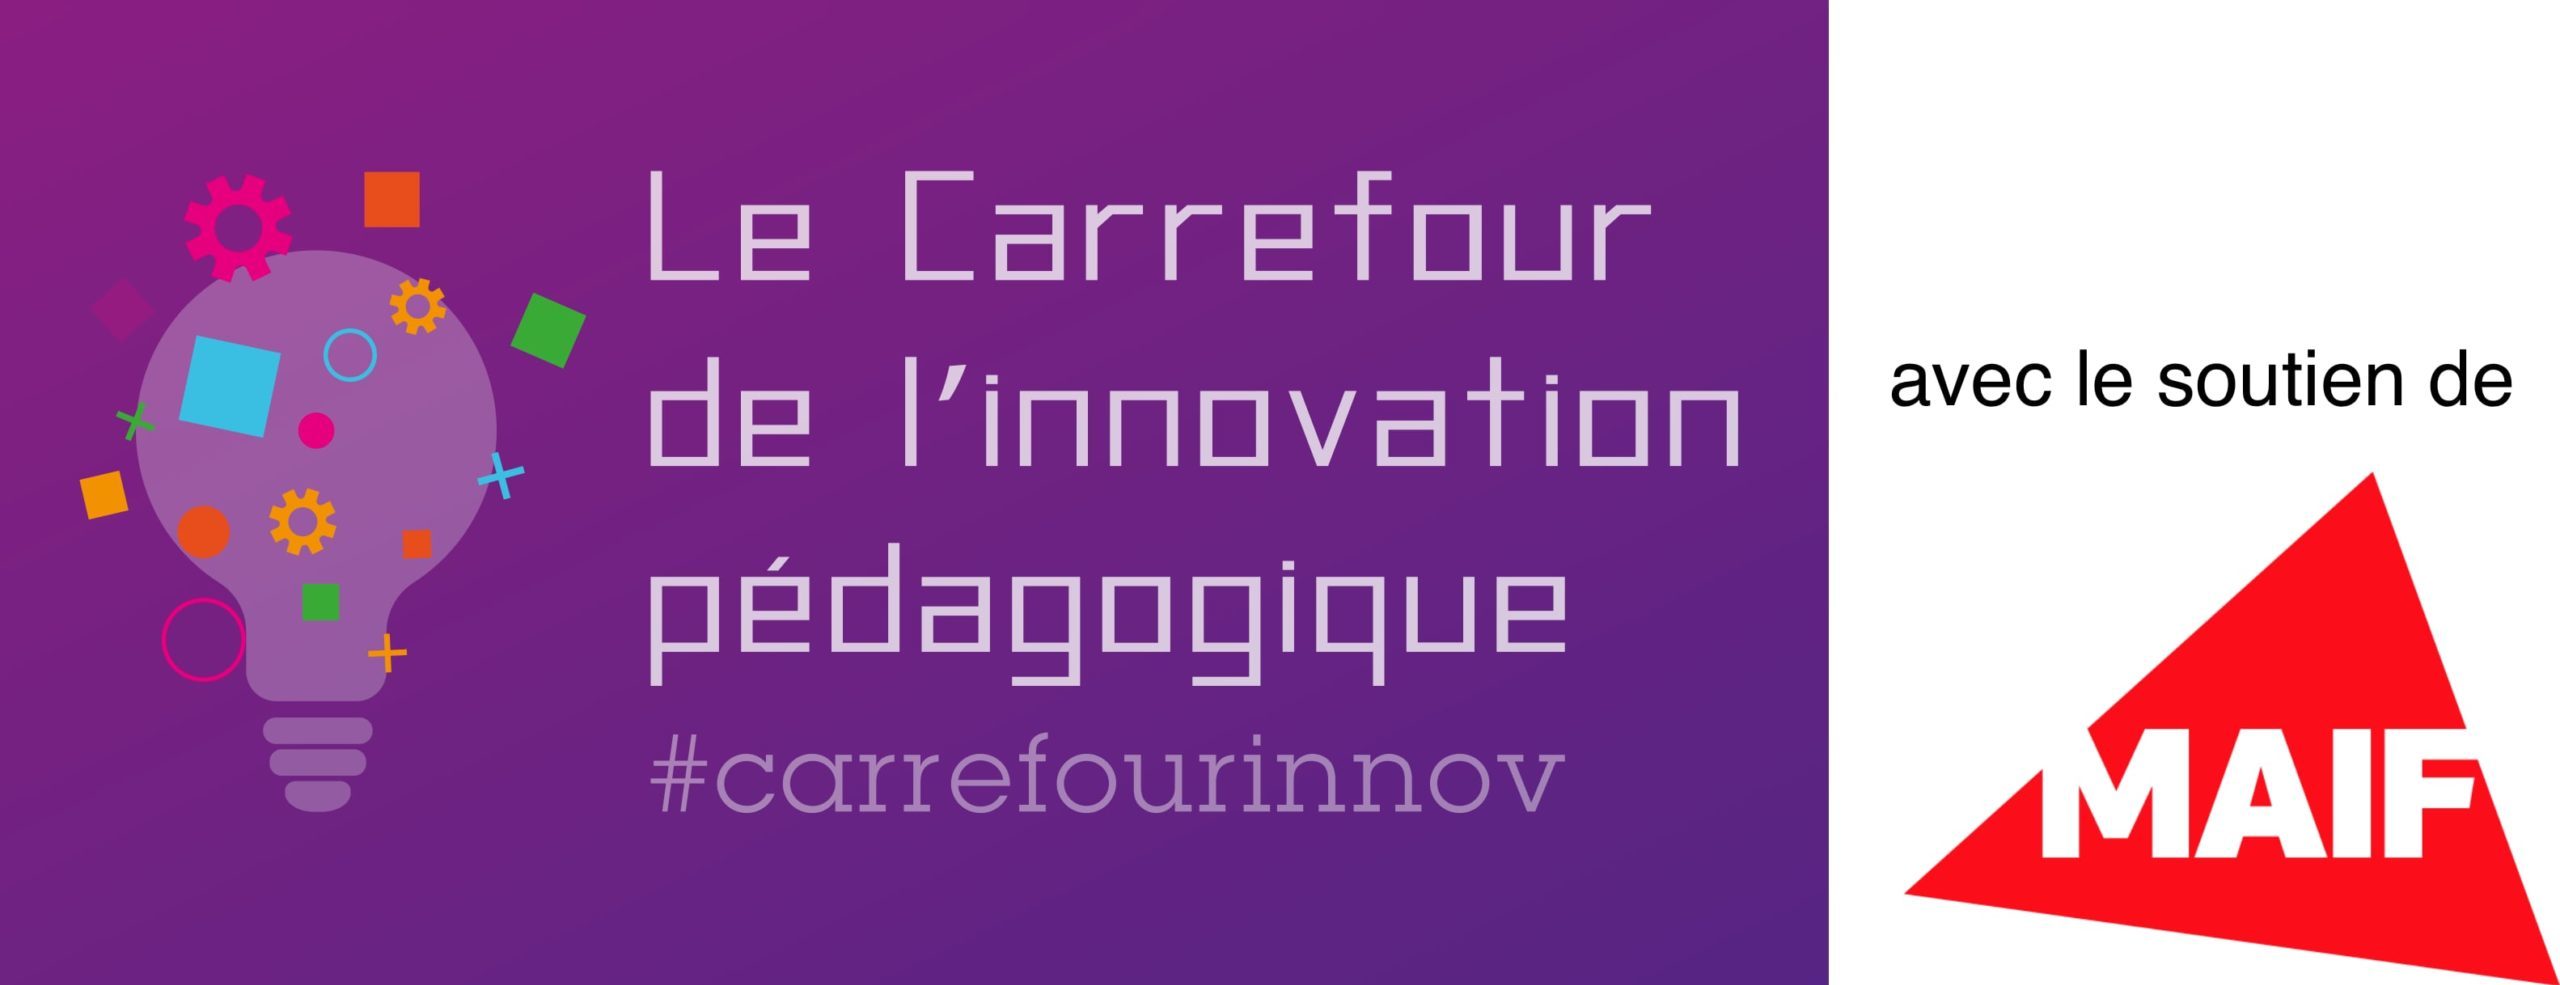 Le Carrefour de l'innovation pédagogique